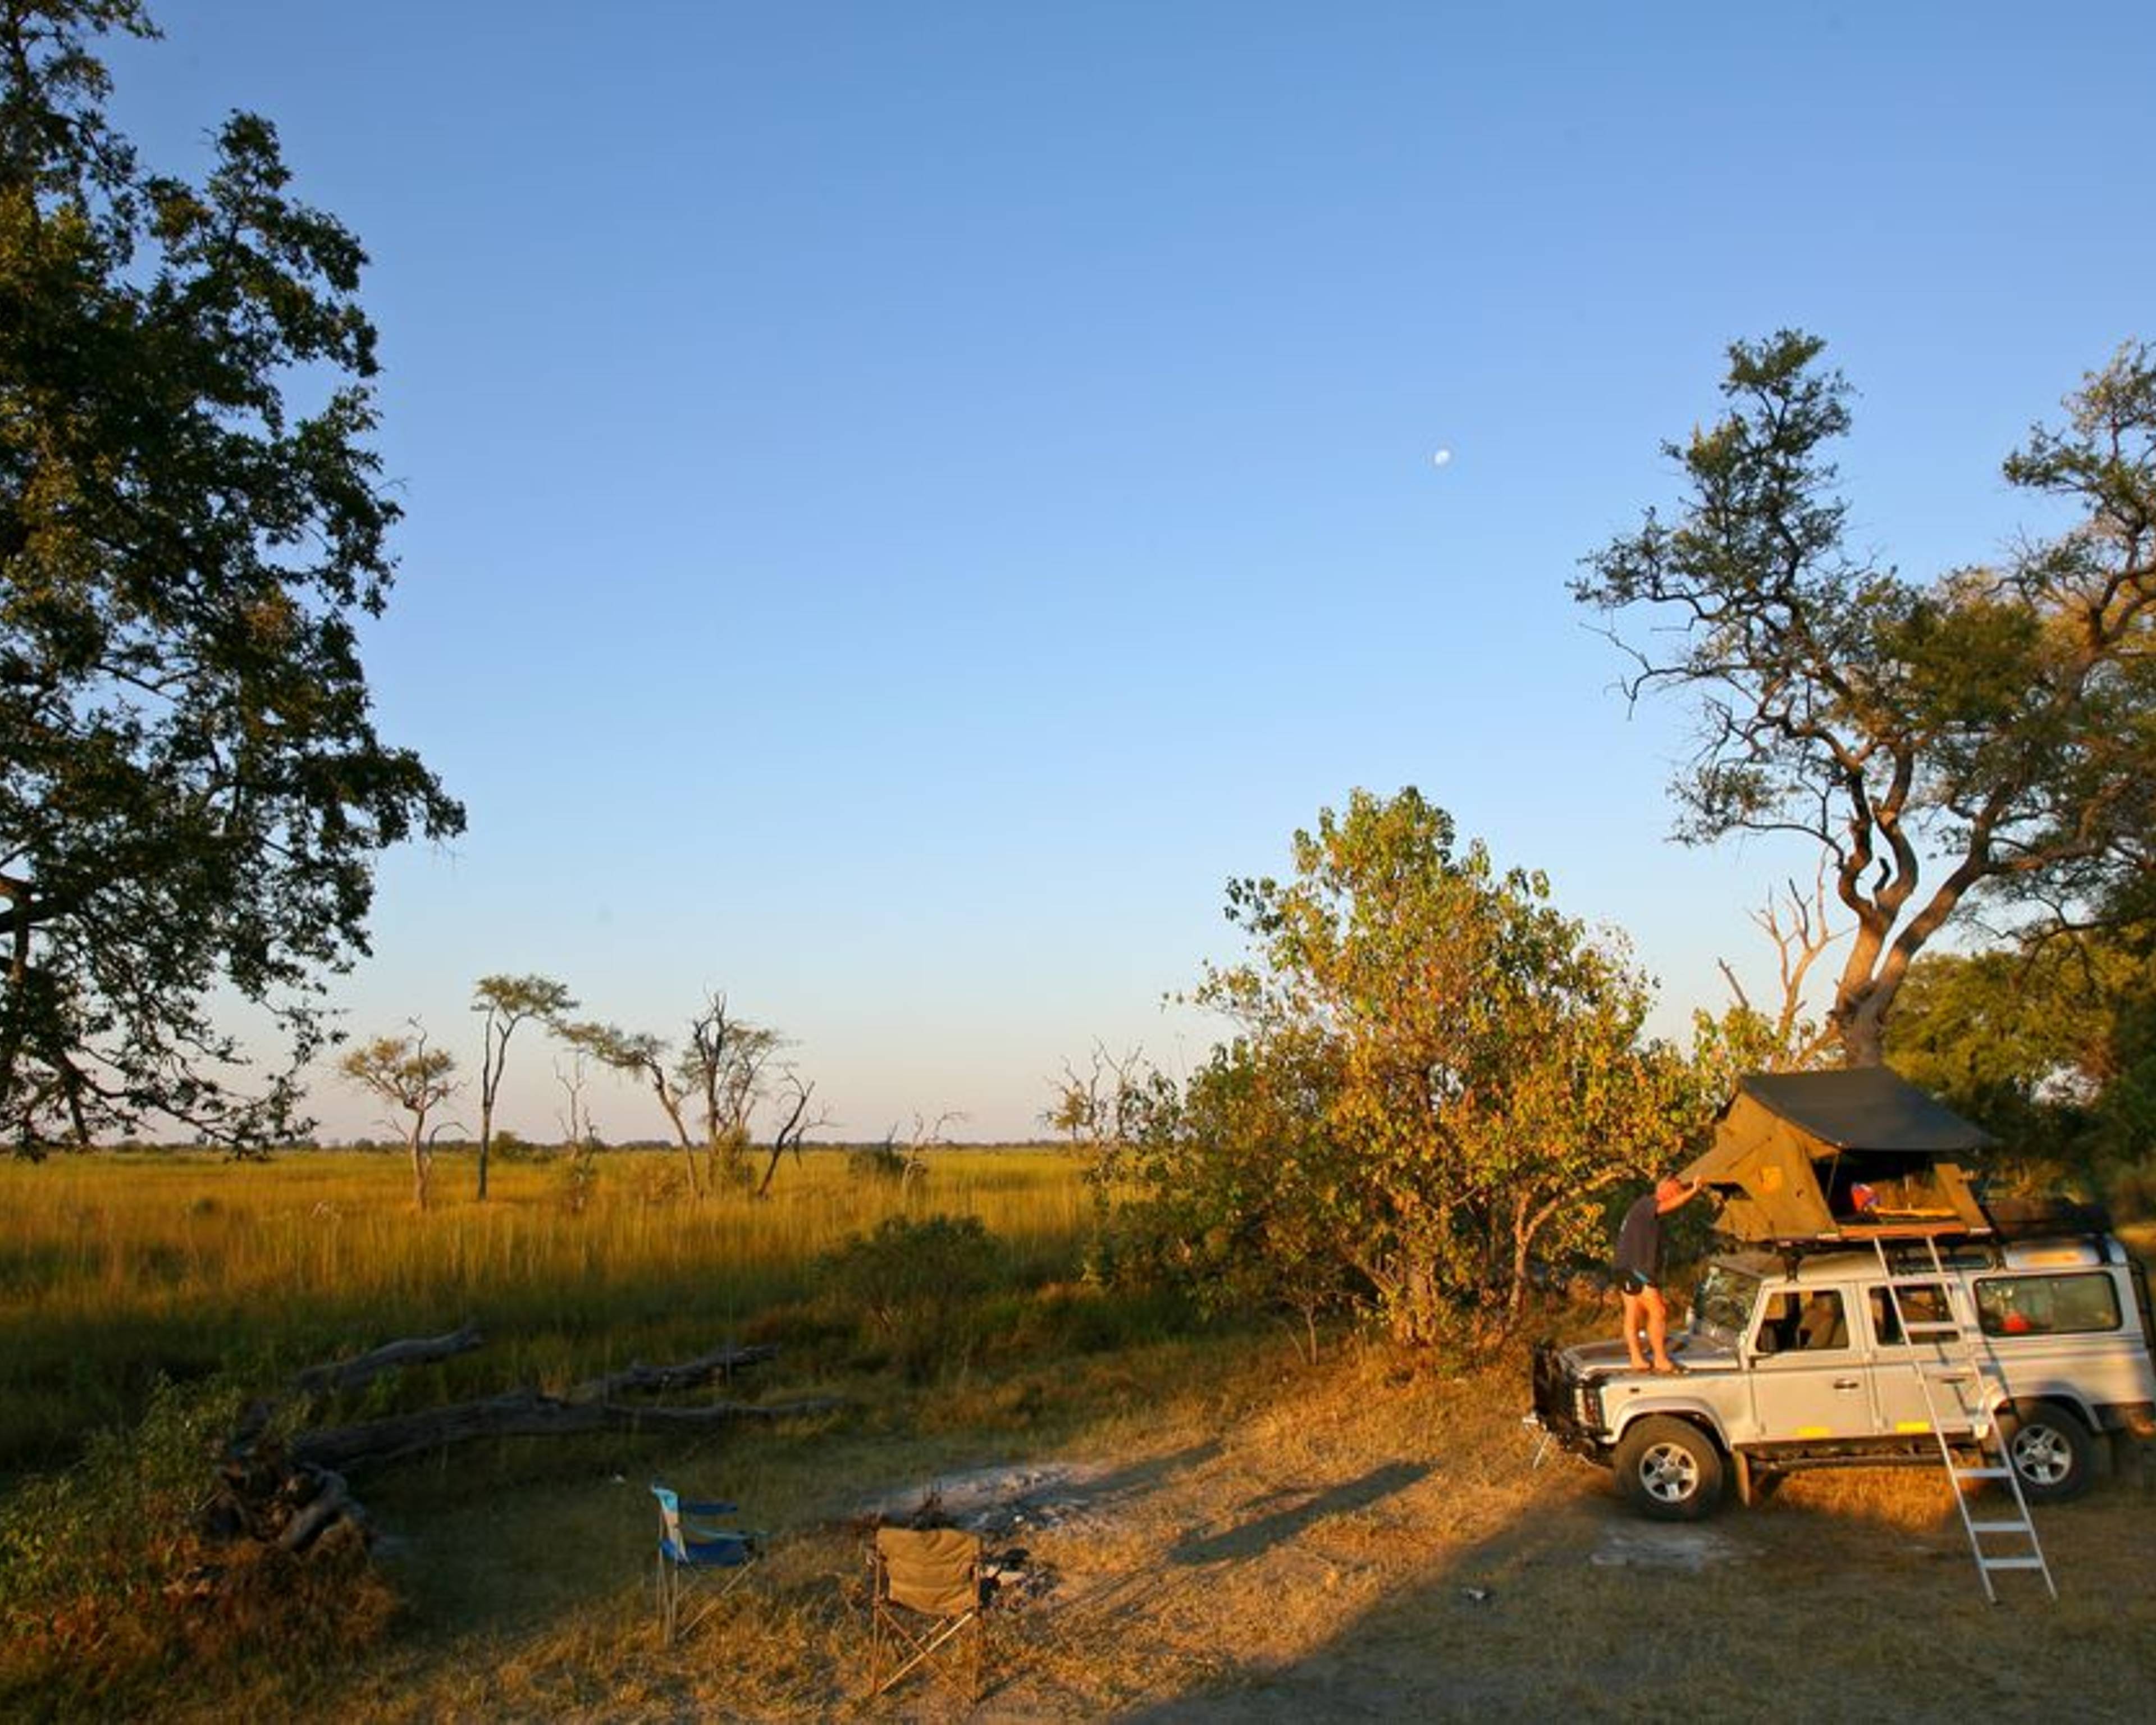 Parenthèse nomade en liberté dans le bush africain